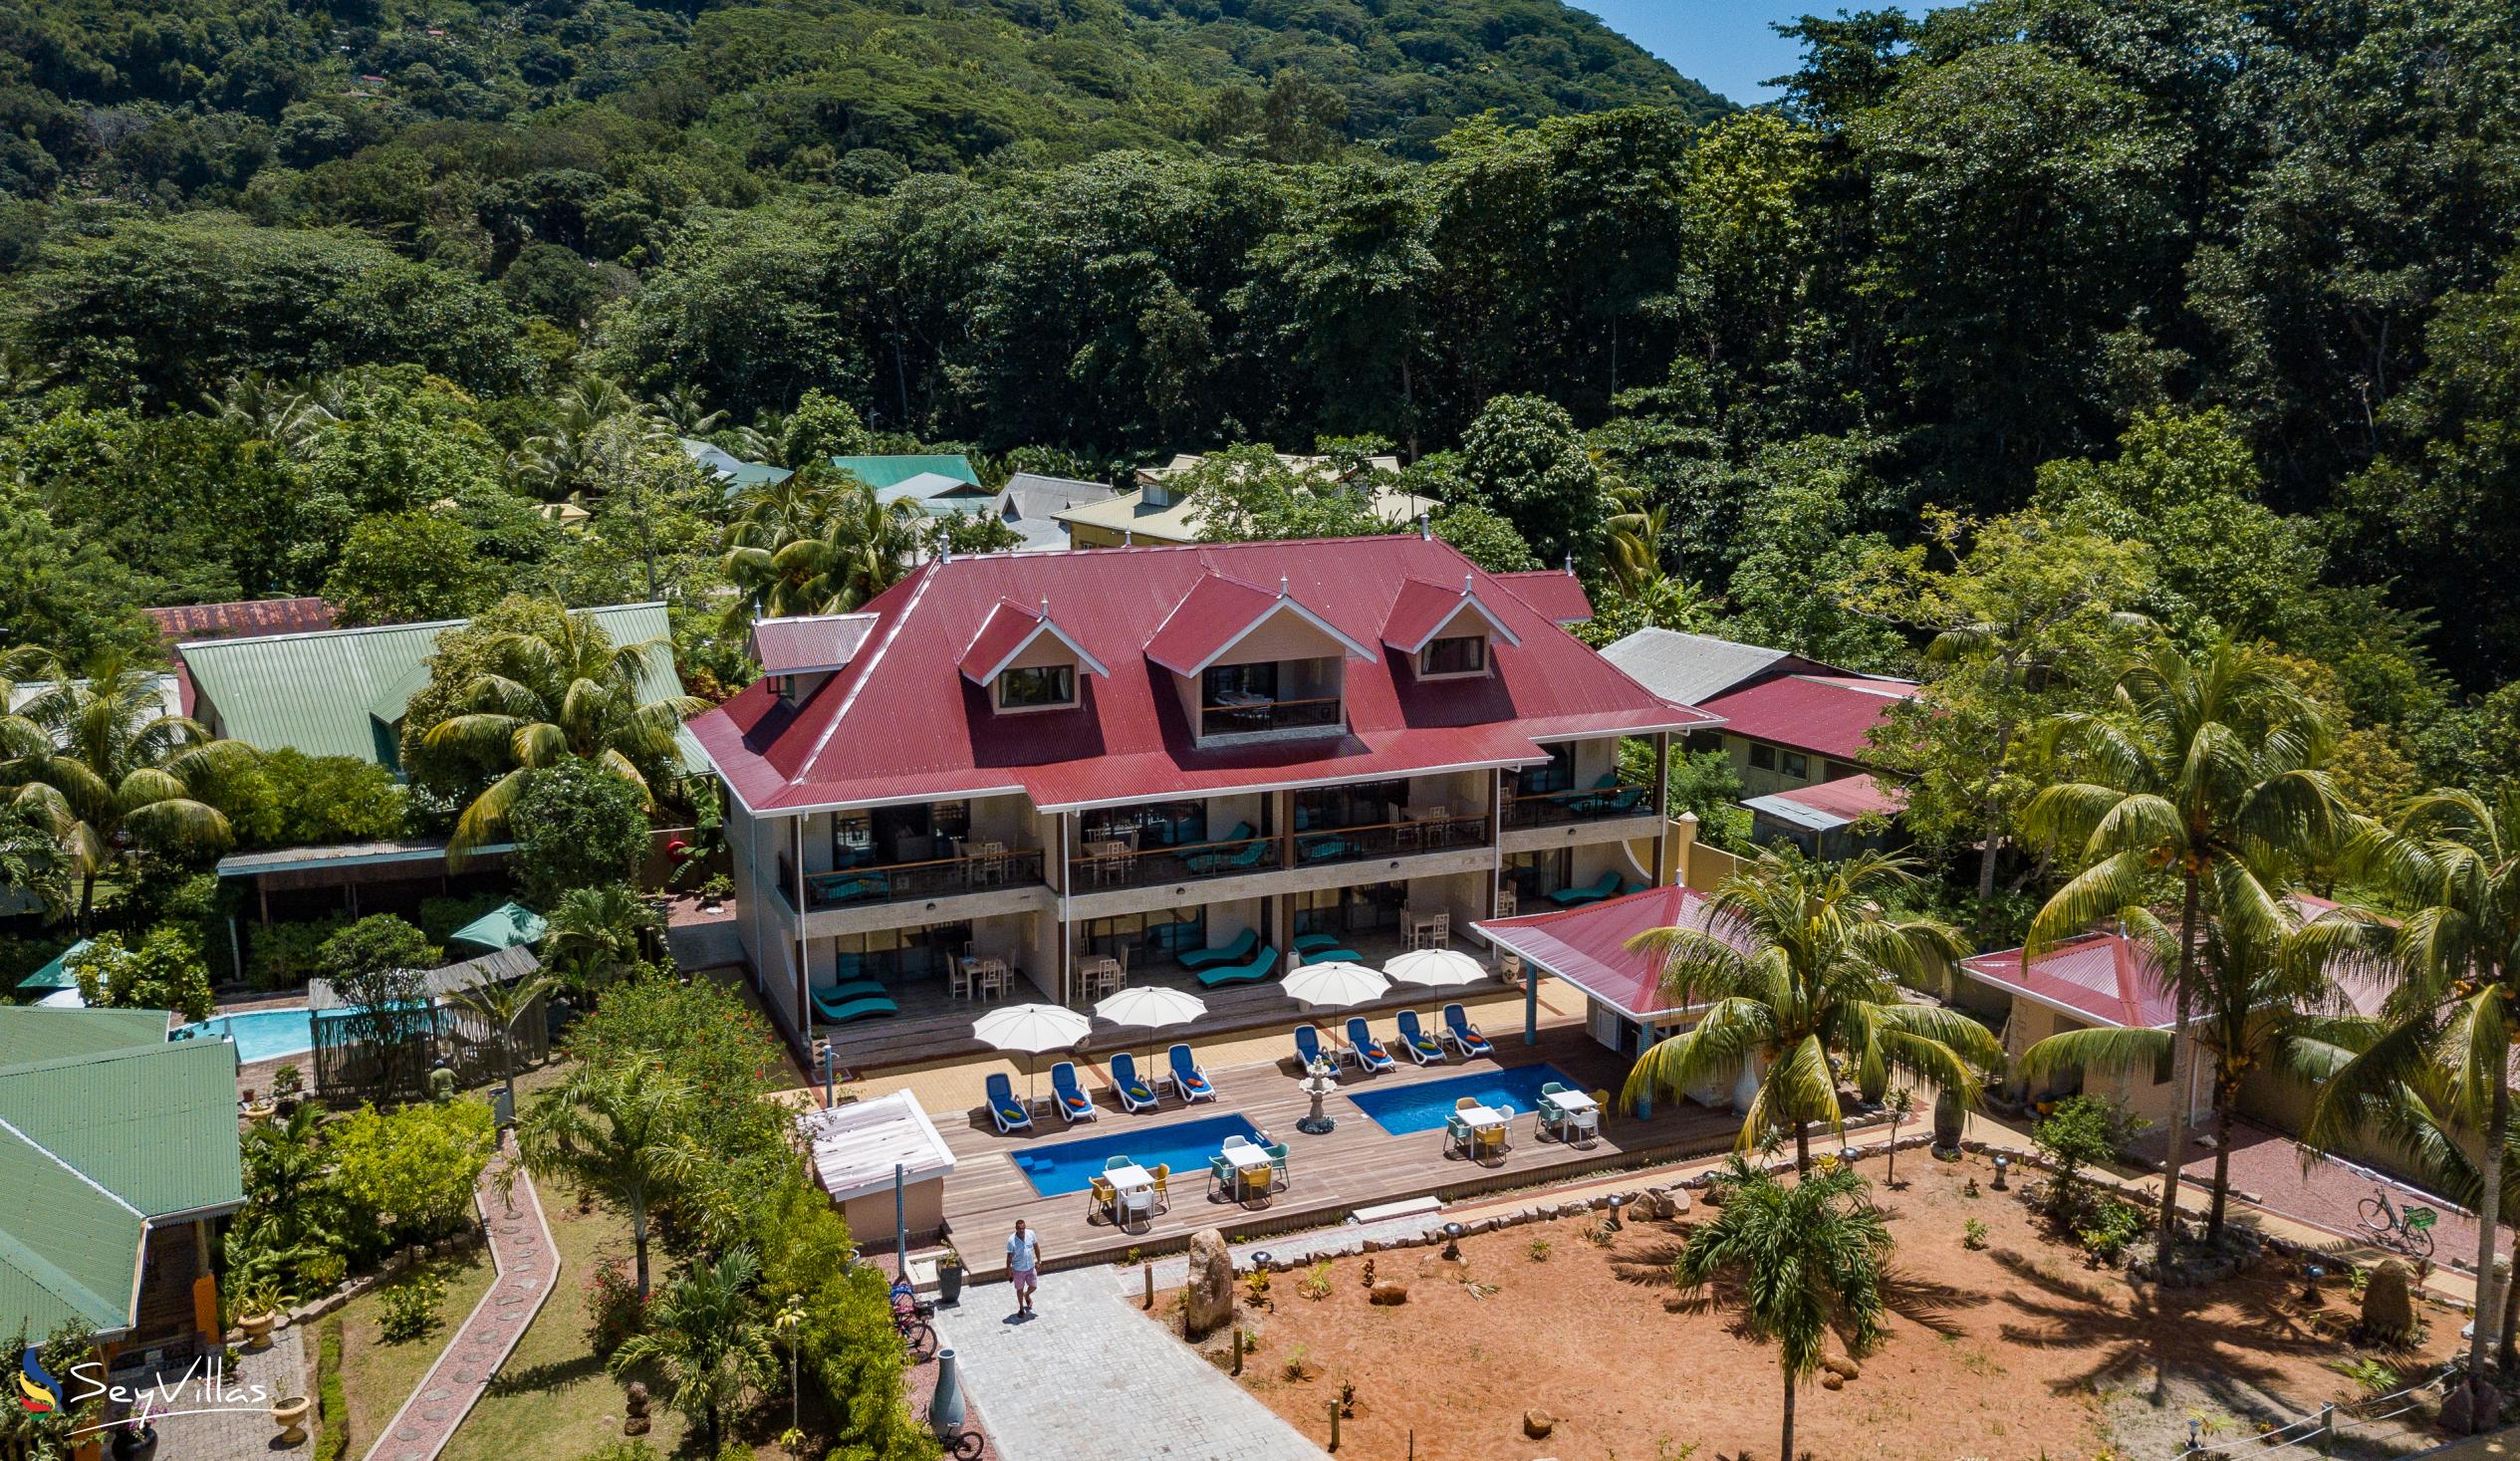 Photo 135: Casa de Leela - Penthouse Apartment - La Digue (Seychelles)